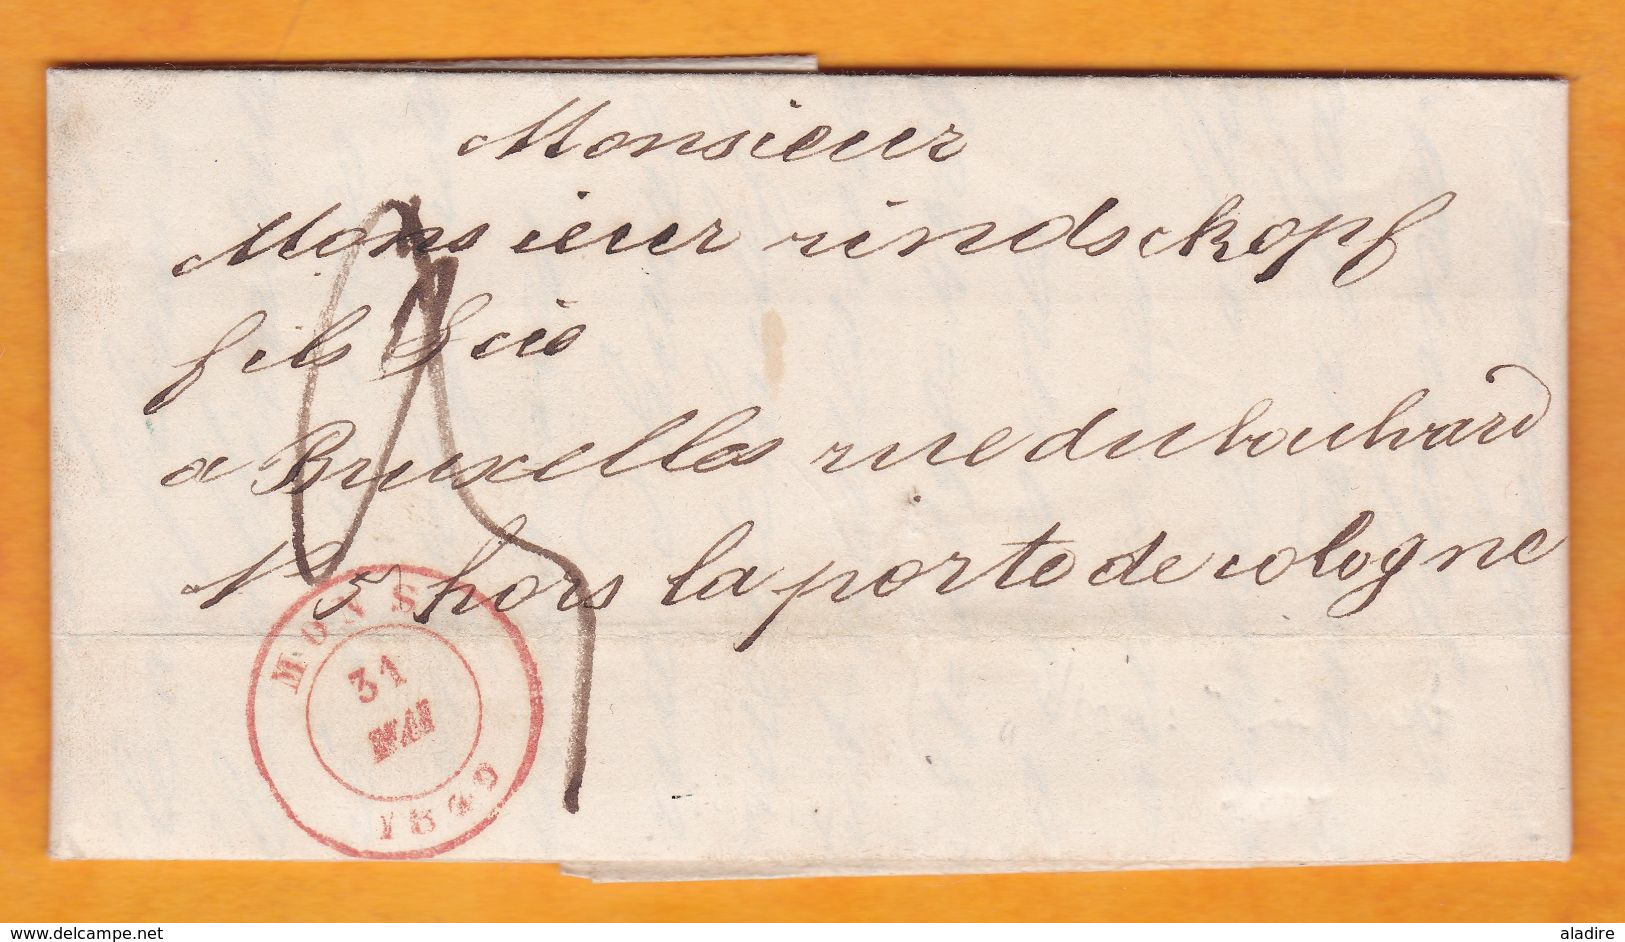 1849 - Lettre Pliée Avec Correspondance En Français De Mons Vers Bruxelles, Belgique - Taxe 3 - Vente D'obligations - 1830-1849 (Unabhängiges Belgien)